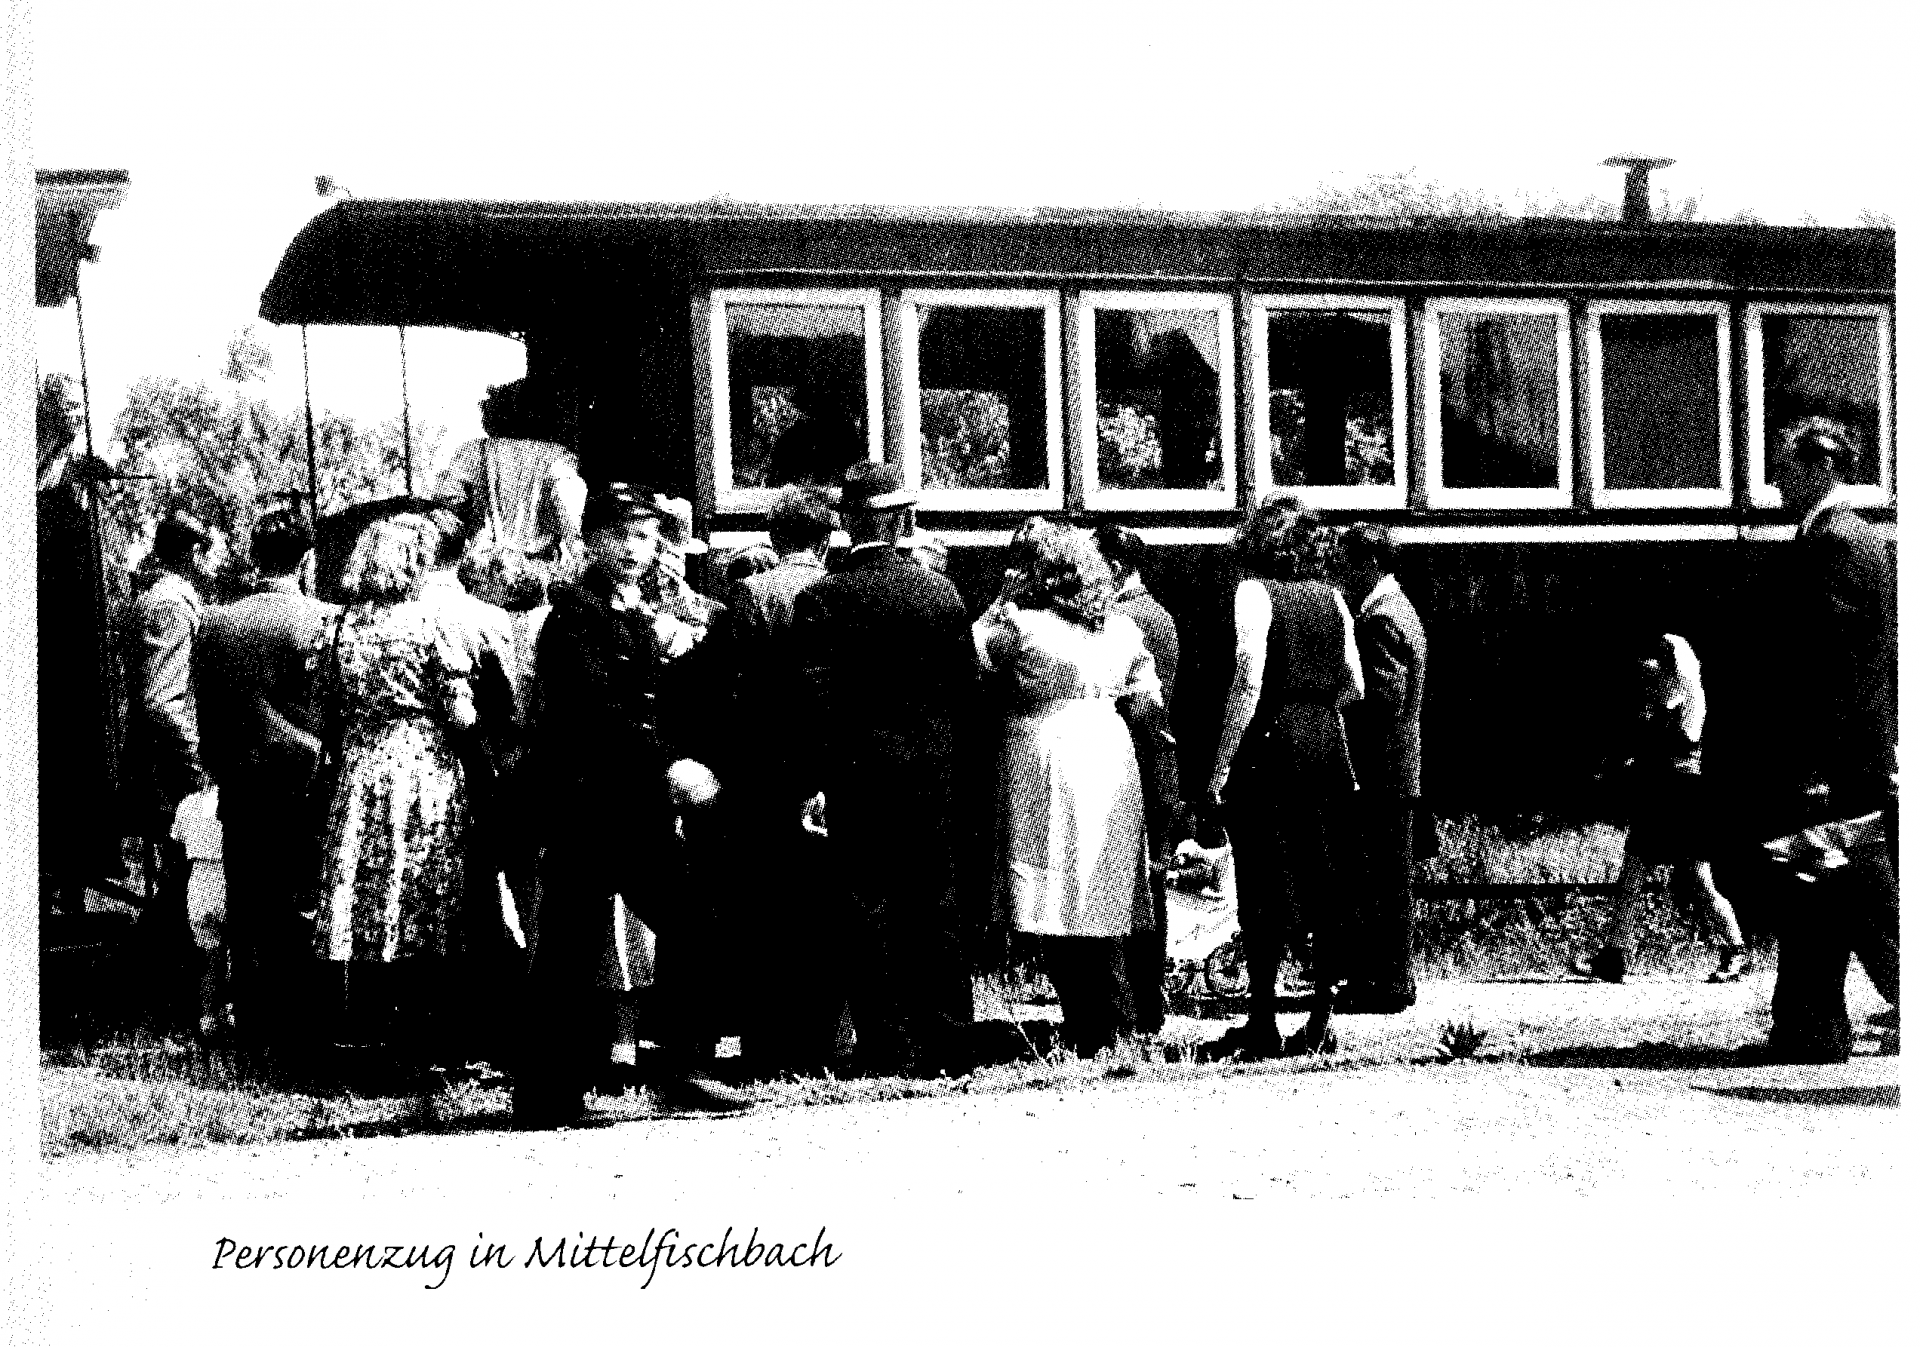 Personenzug in Mittelfischbach